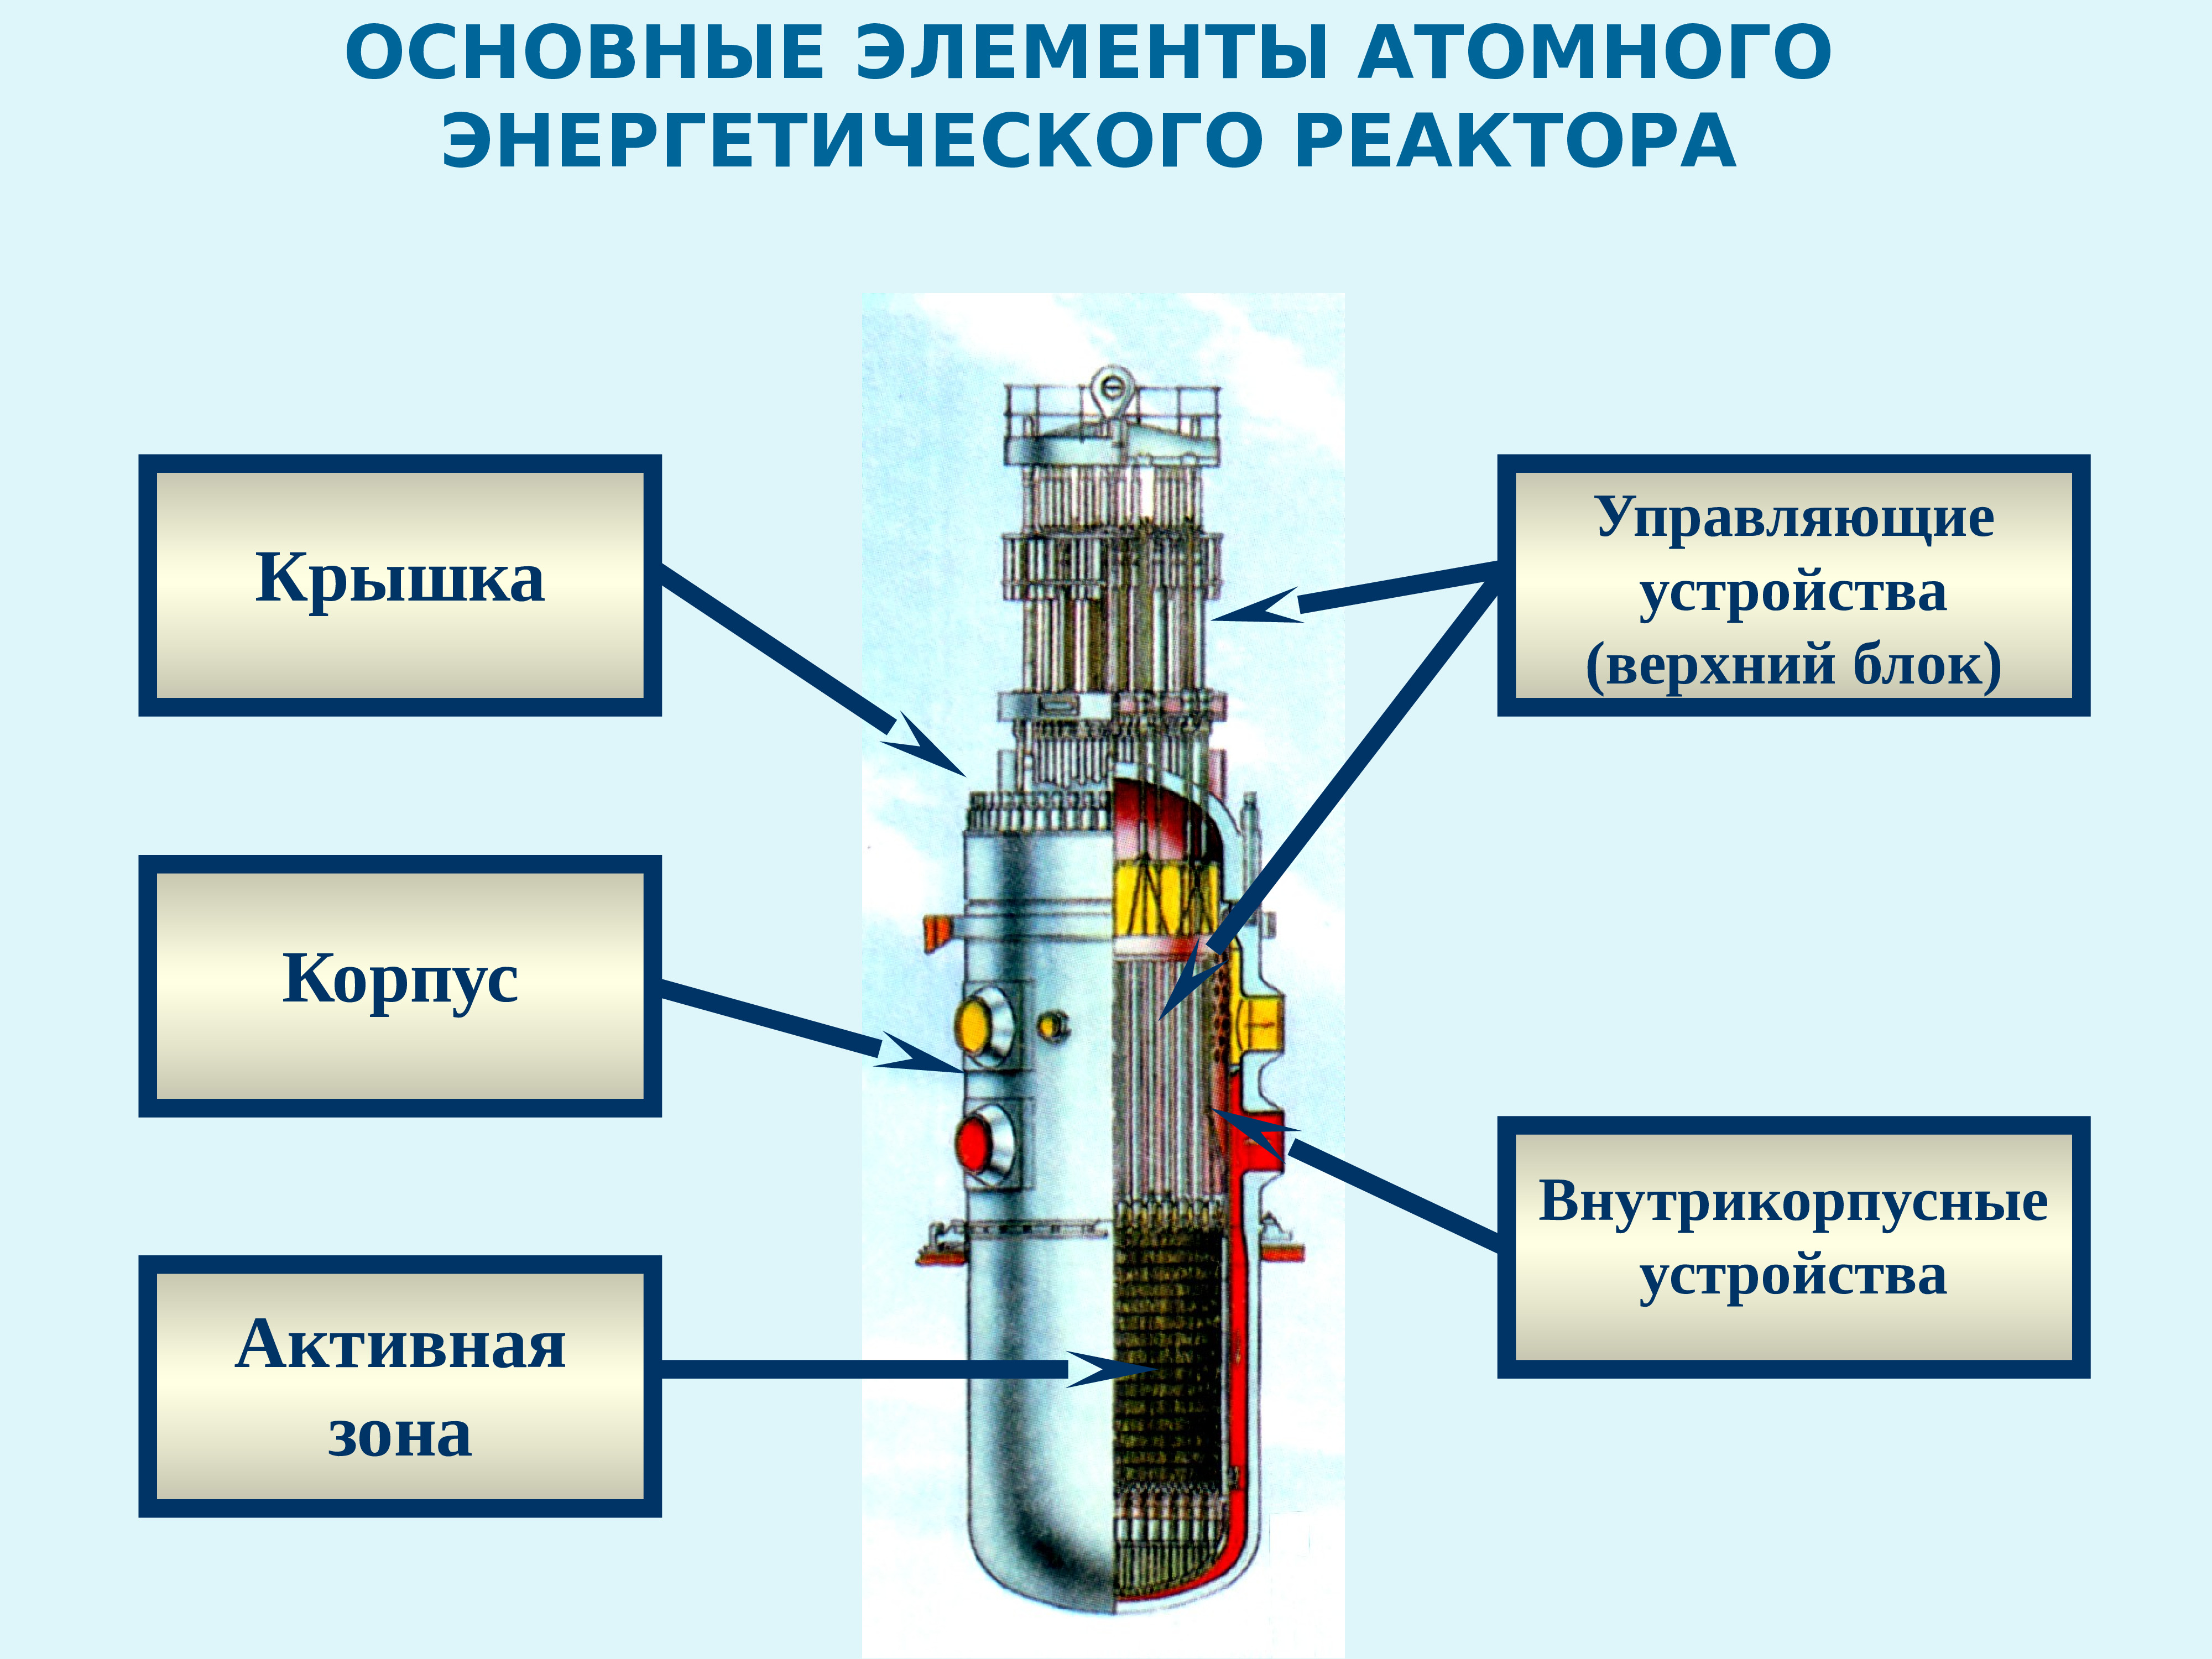 Строение ядерного реактора. Крышка реактора ВВЭР 1200. Энергетический ядерный реактор схема. Ядерный реактор строение ВВЭР. Схема работы реактора ВВЭР.